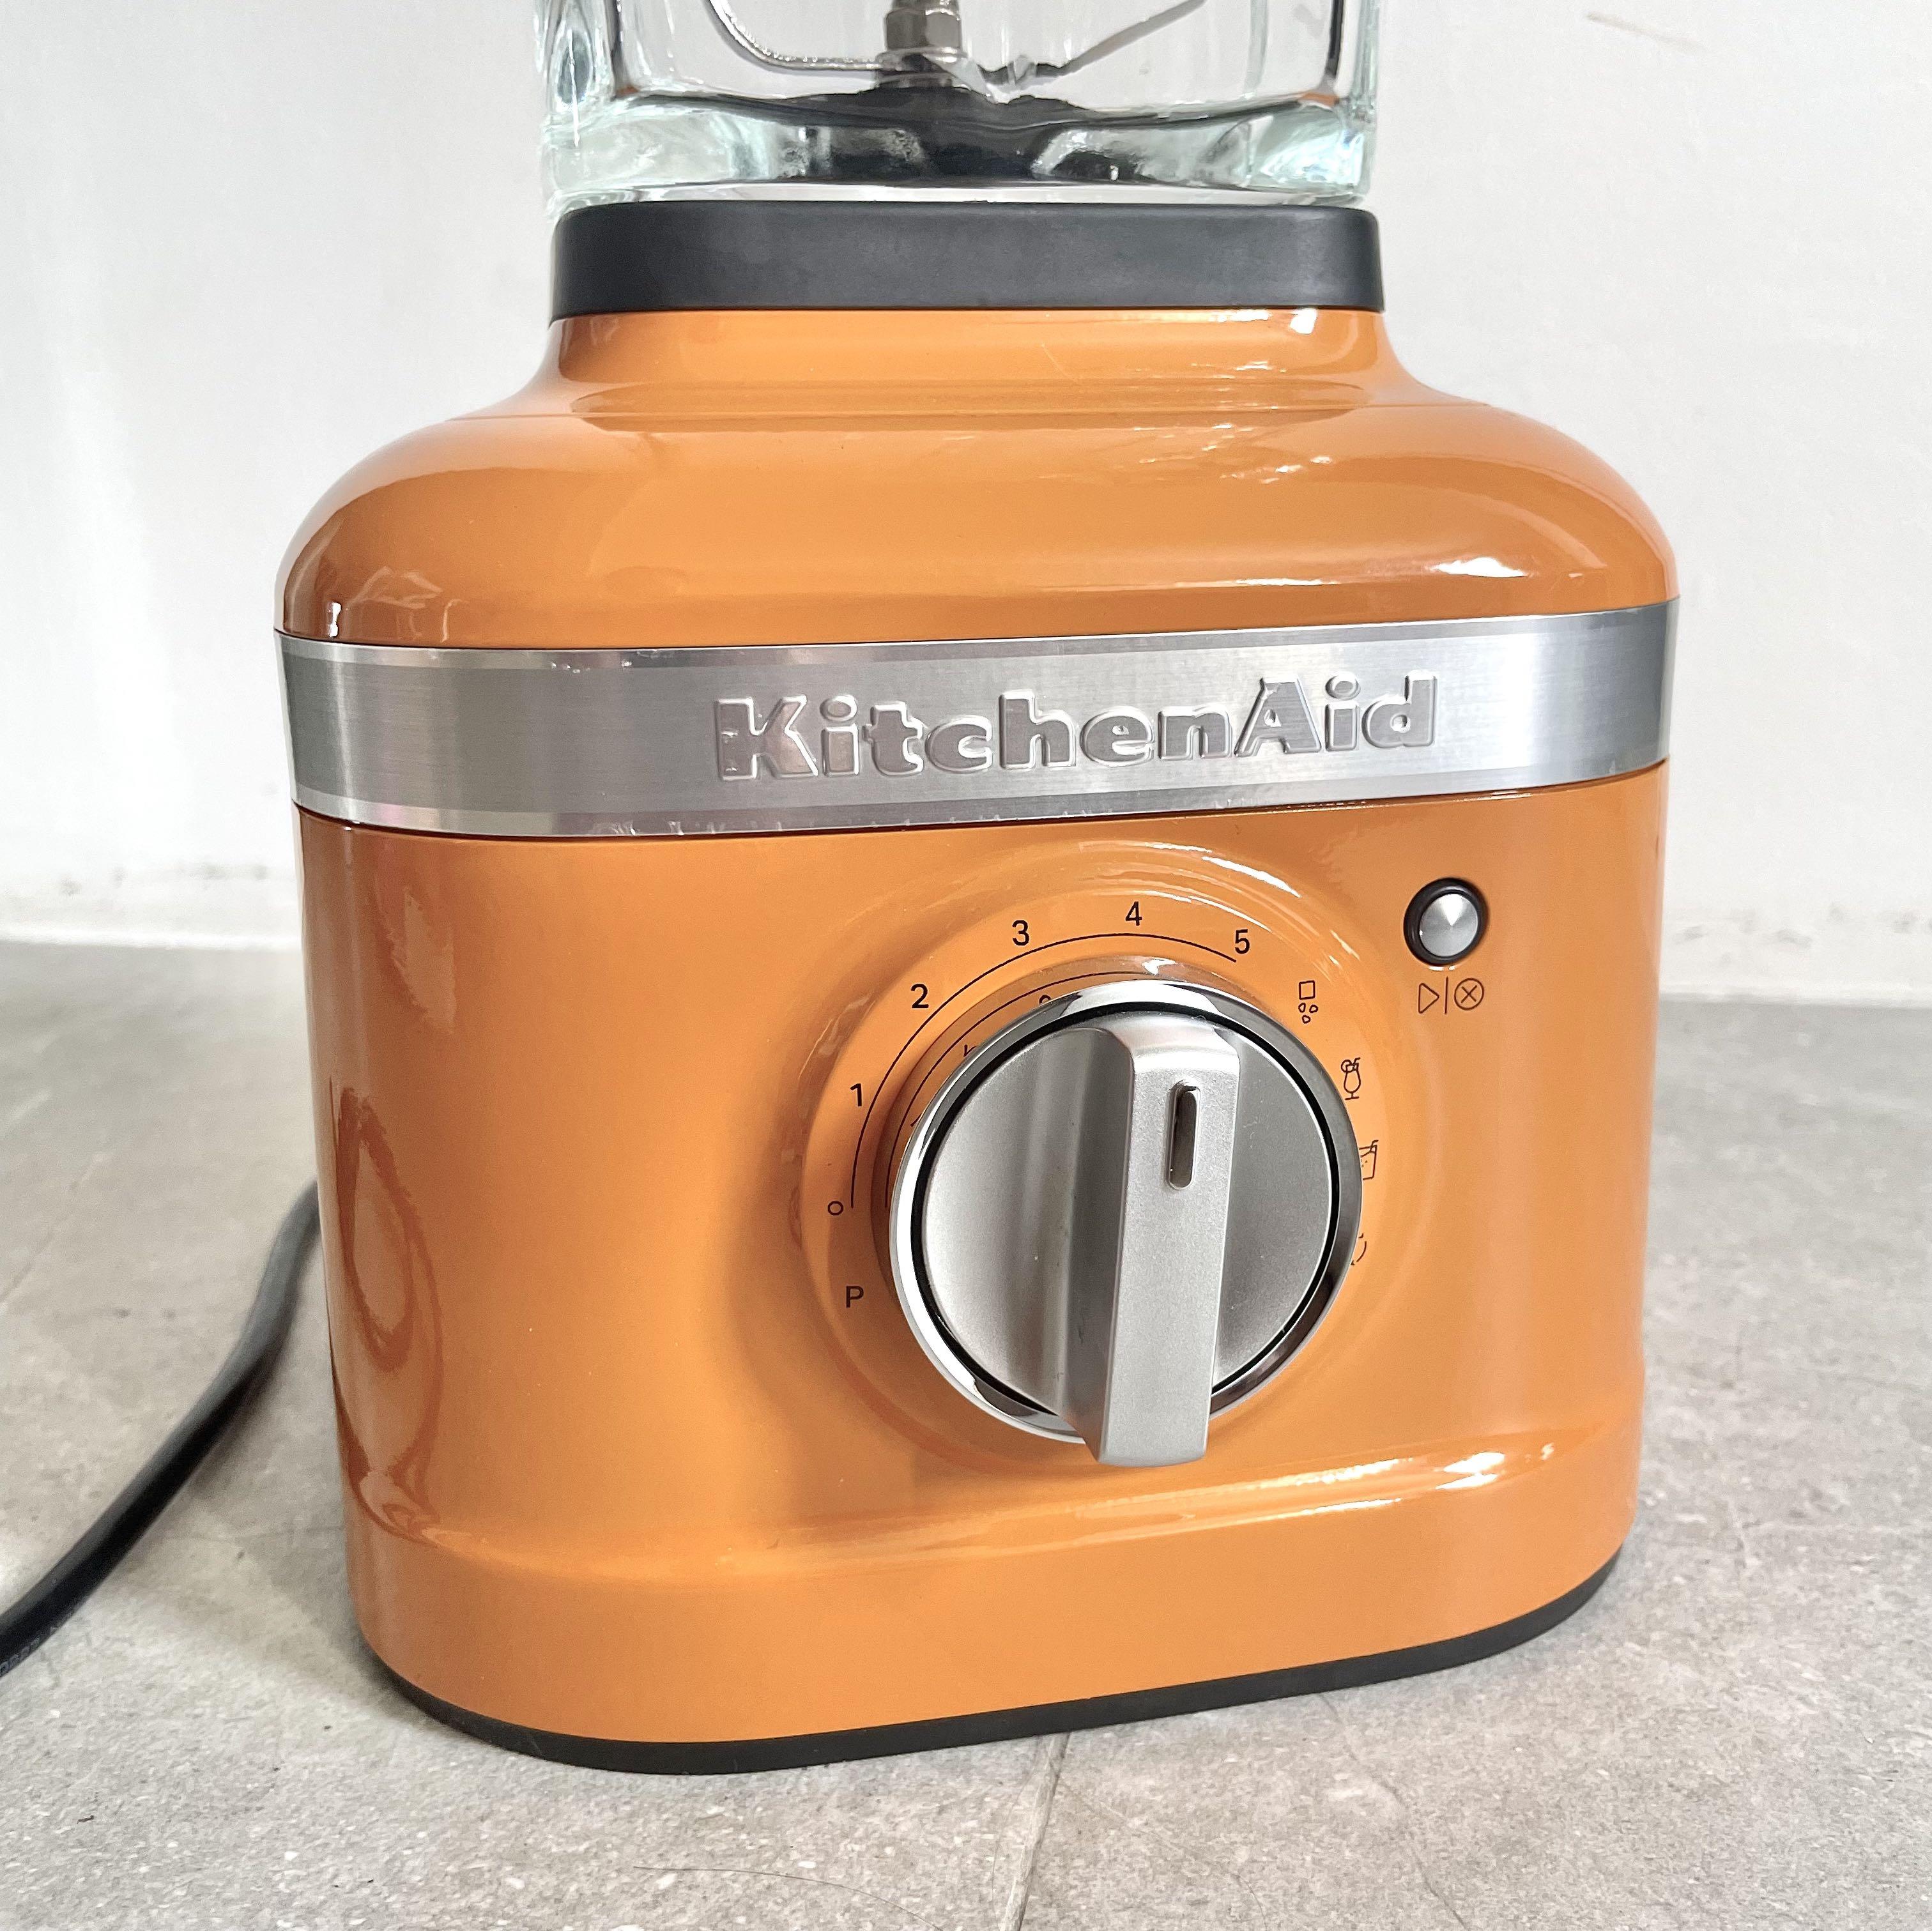 Blender Kitchenaid Artisan K400 5ksb4026eca Blenders For Kitchen Home  Appliances - Blenders - AliExpress